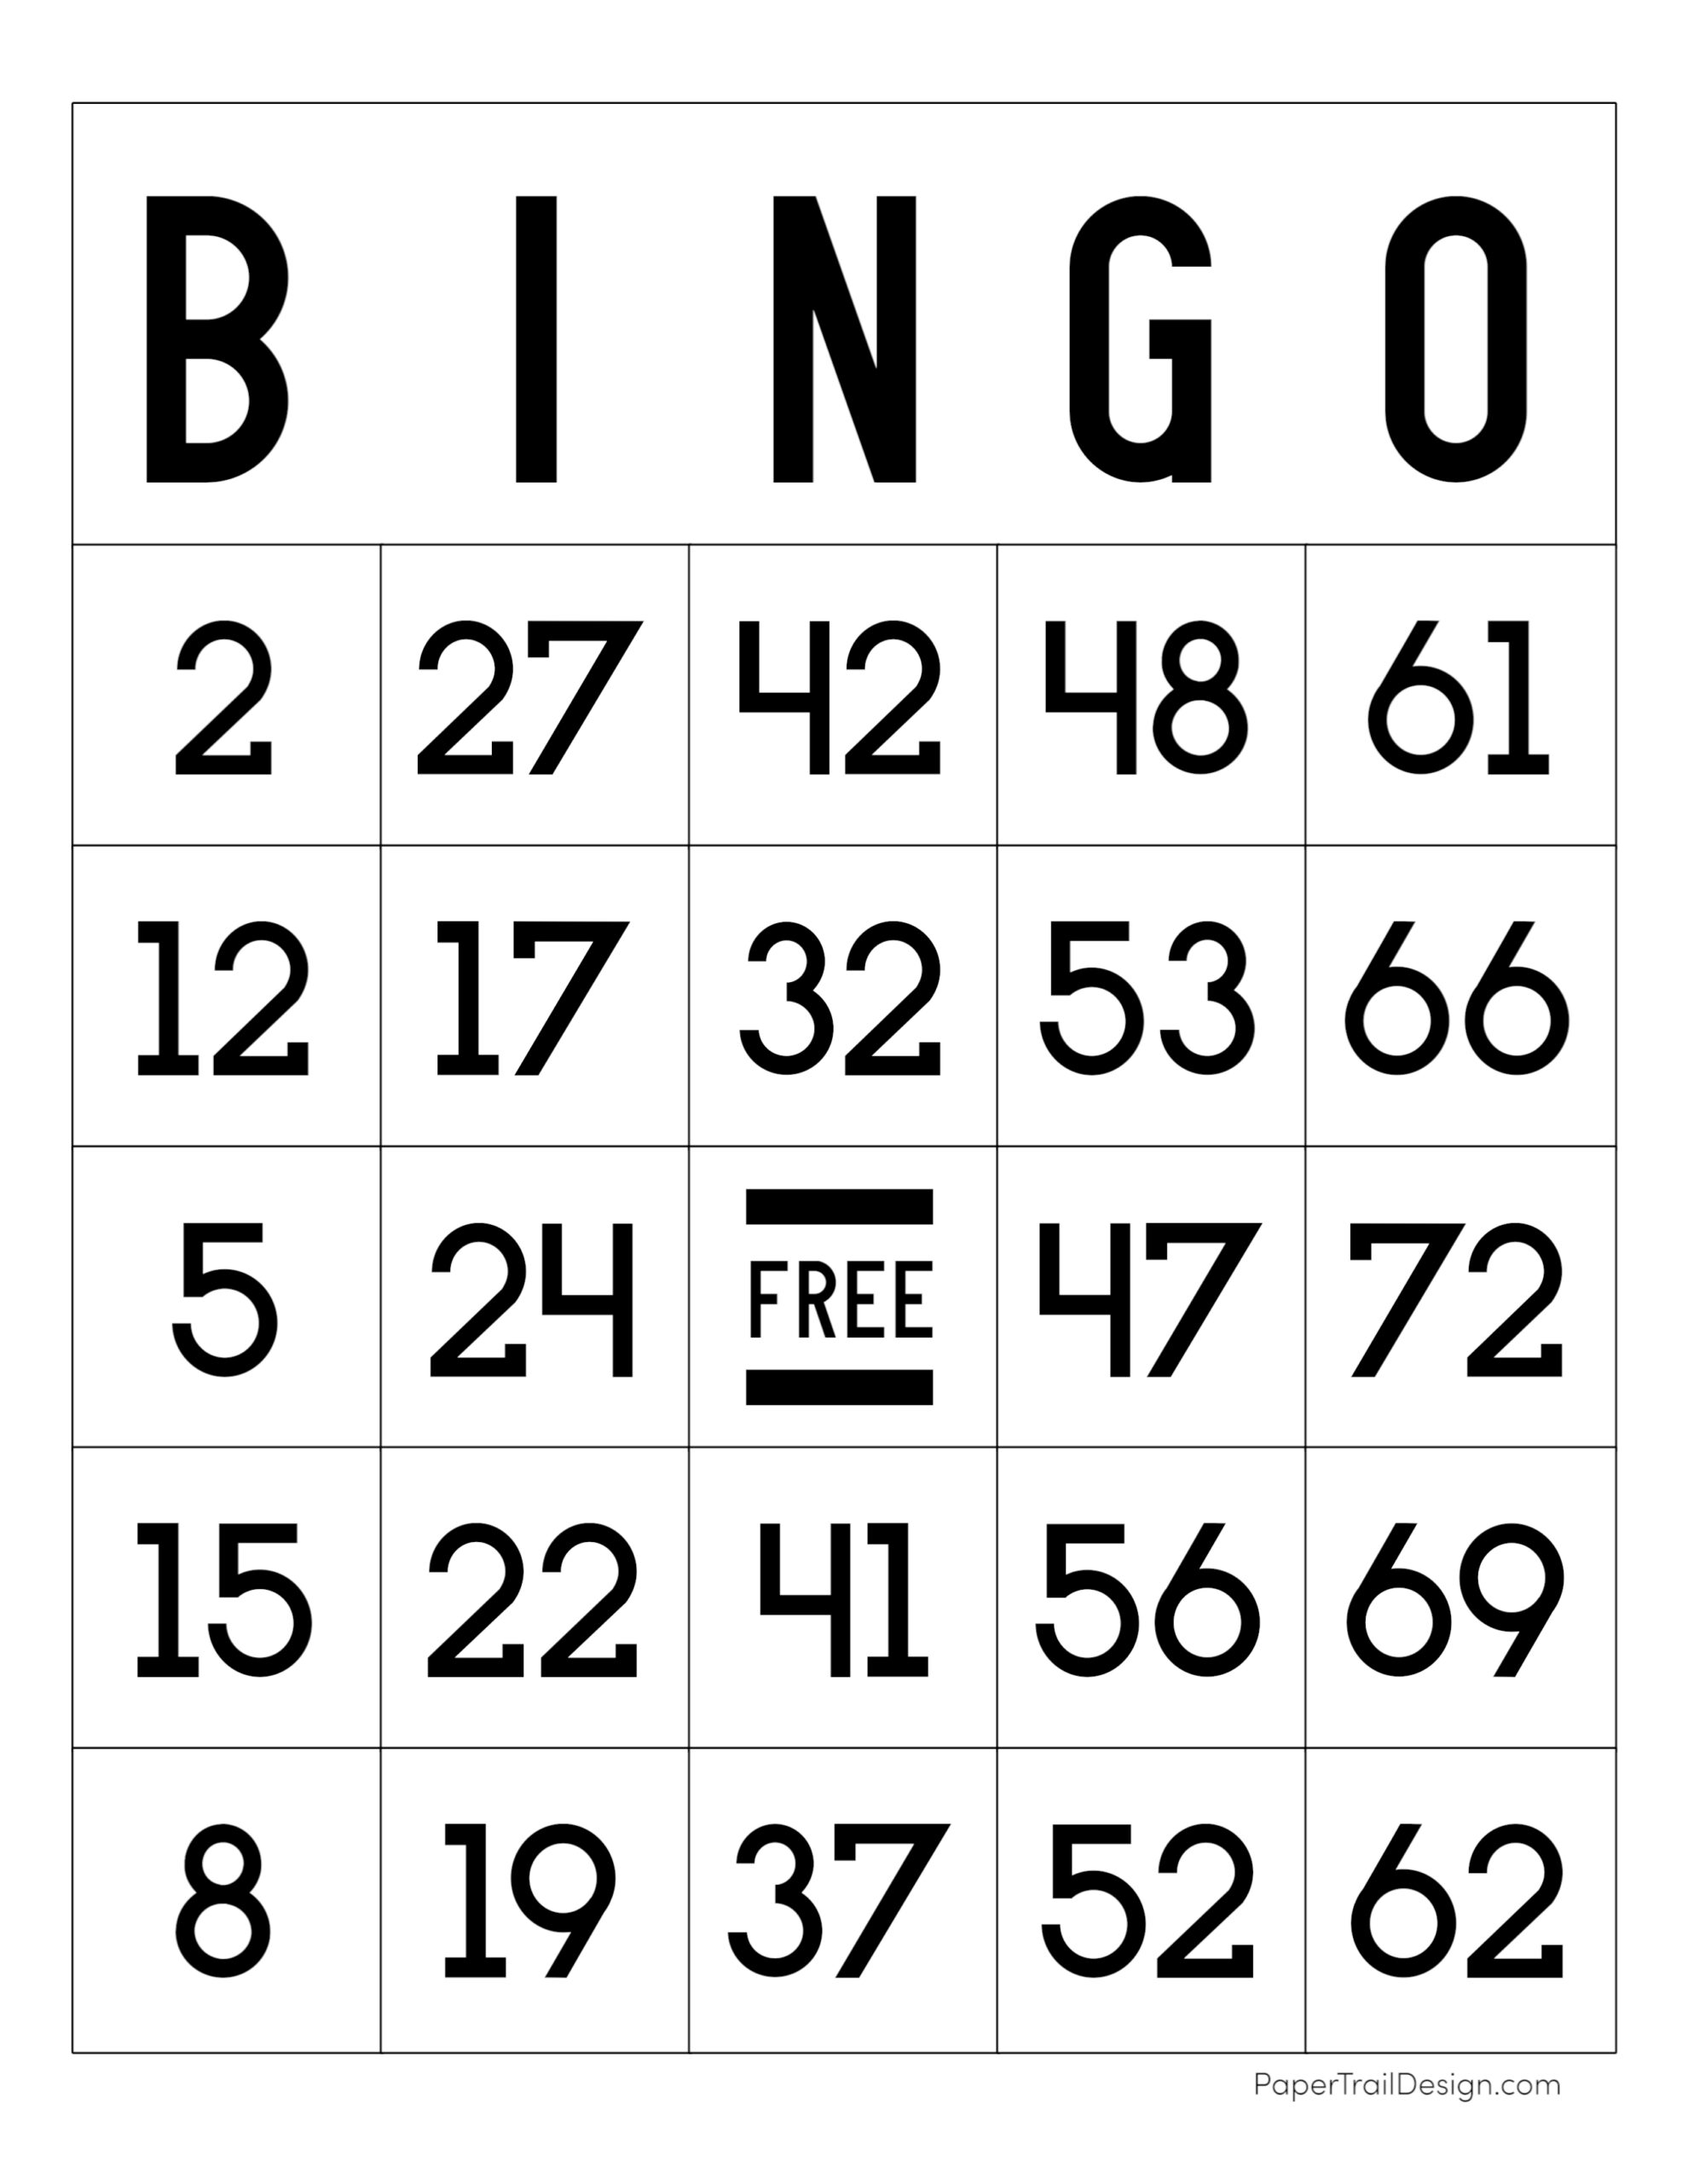 7-tips-for-bingo-beginners-poker-bankroll-blog